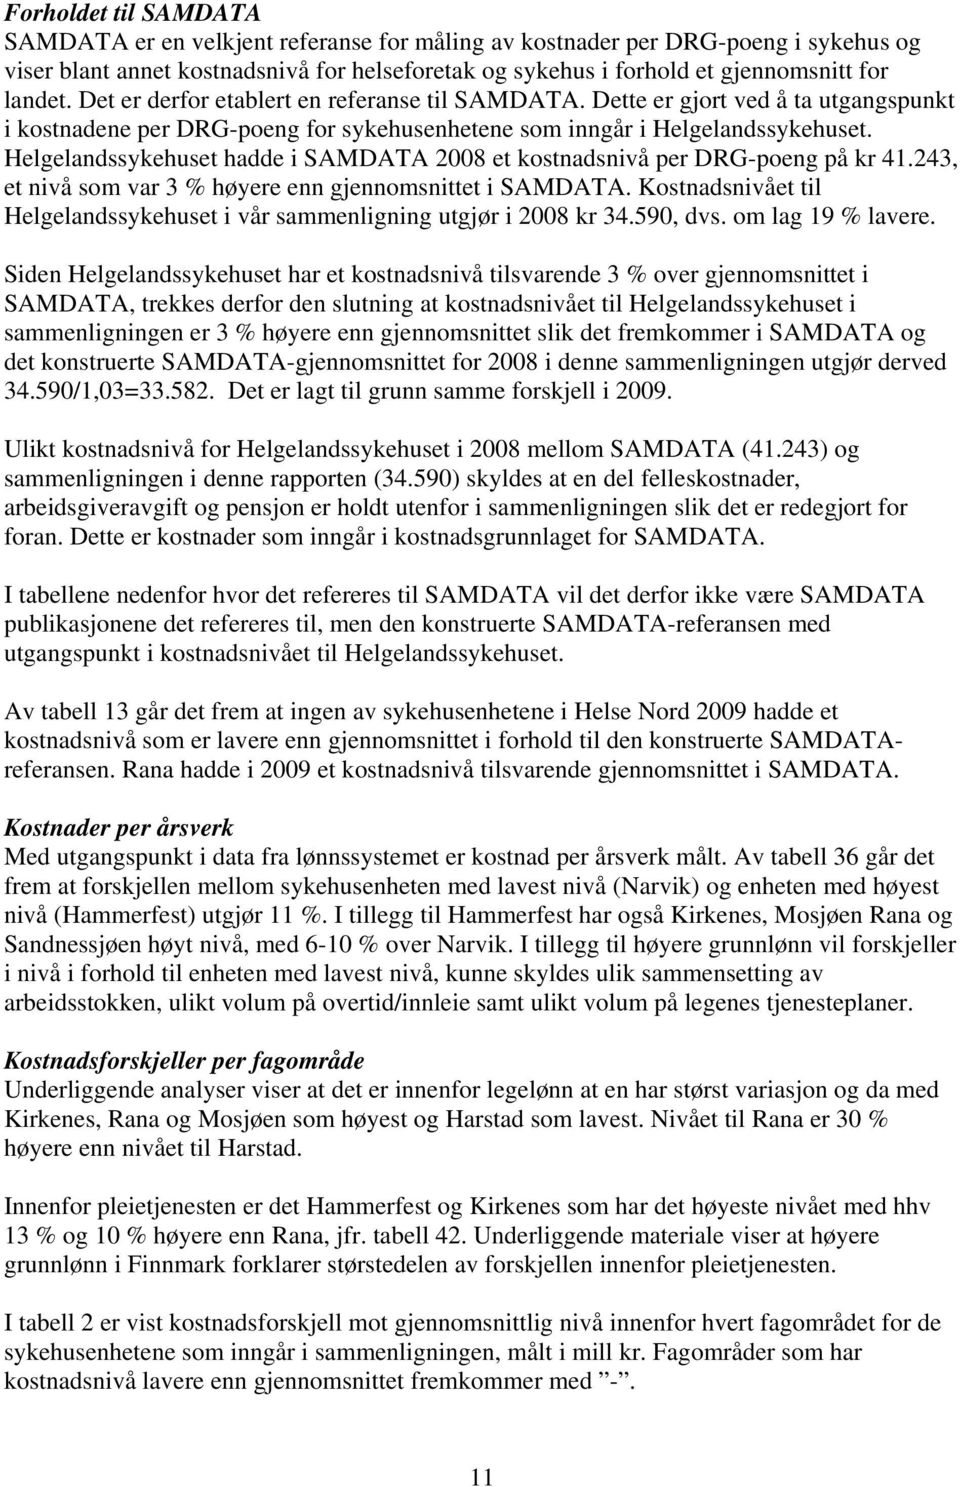 Helgelandssykehuset hadde i SAMDATA 2008 et kostnadsnivå per DRG-poeng på kr 41.243, et nivå som var 3 % høyere enn gjennomsnittet i SAMDATA.